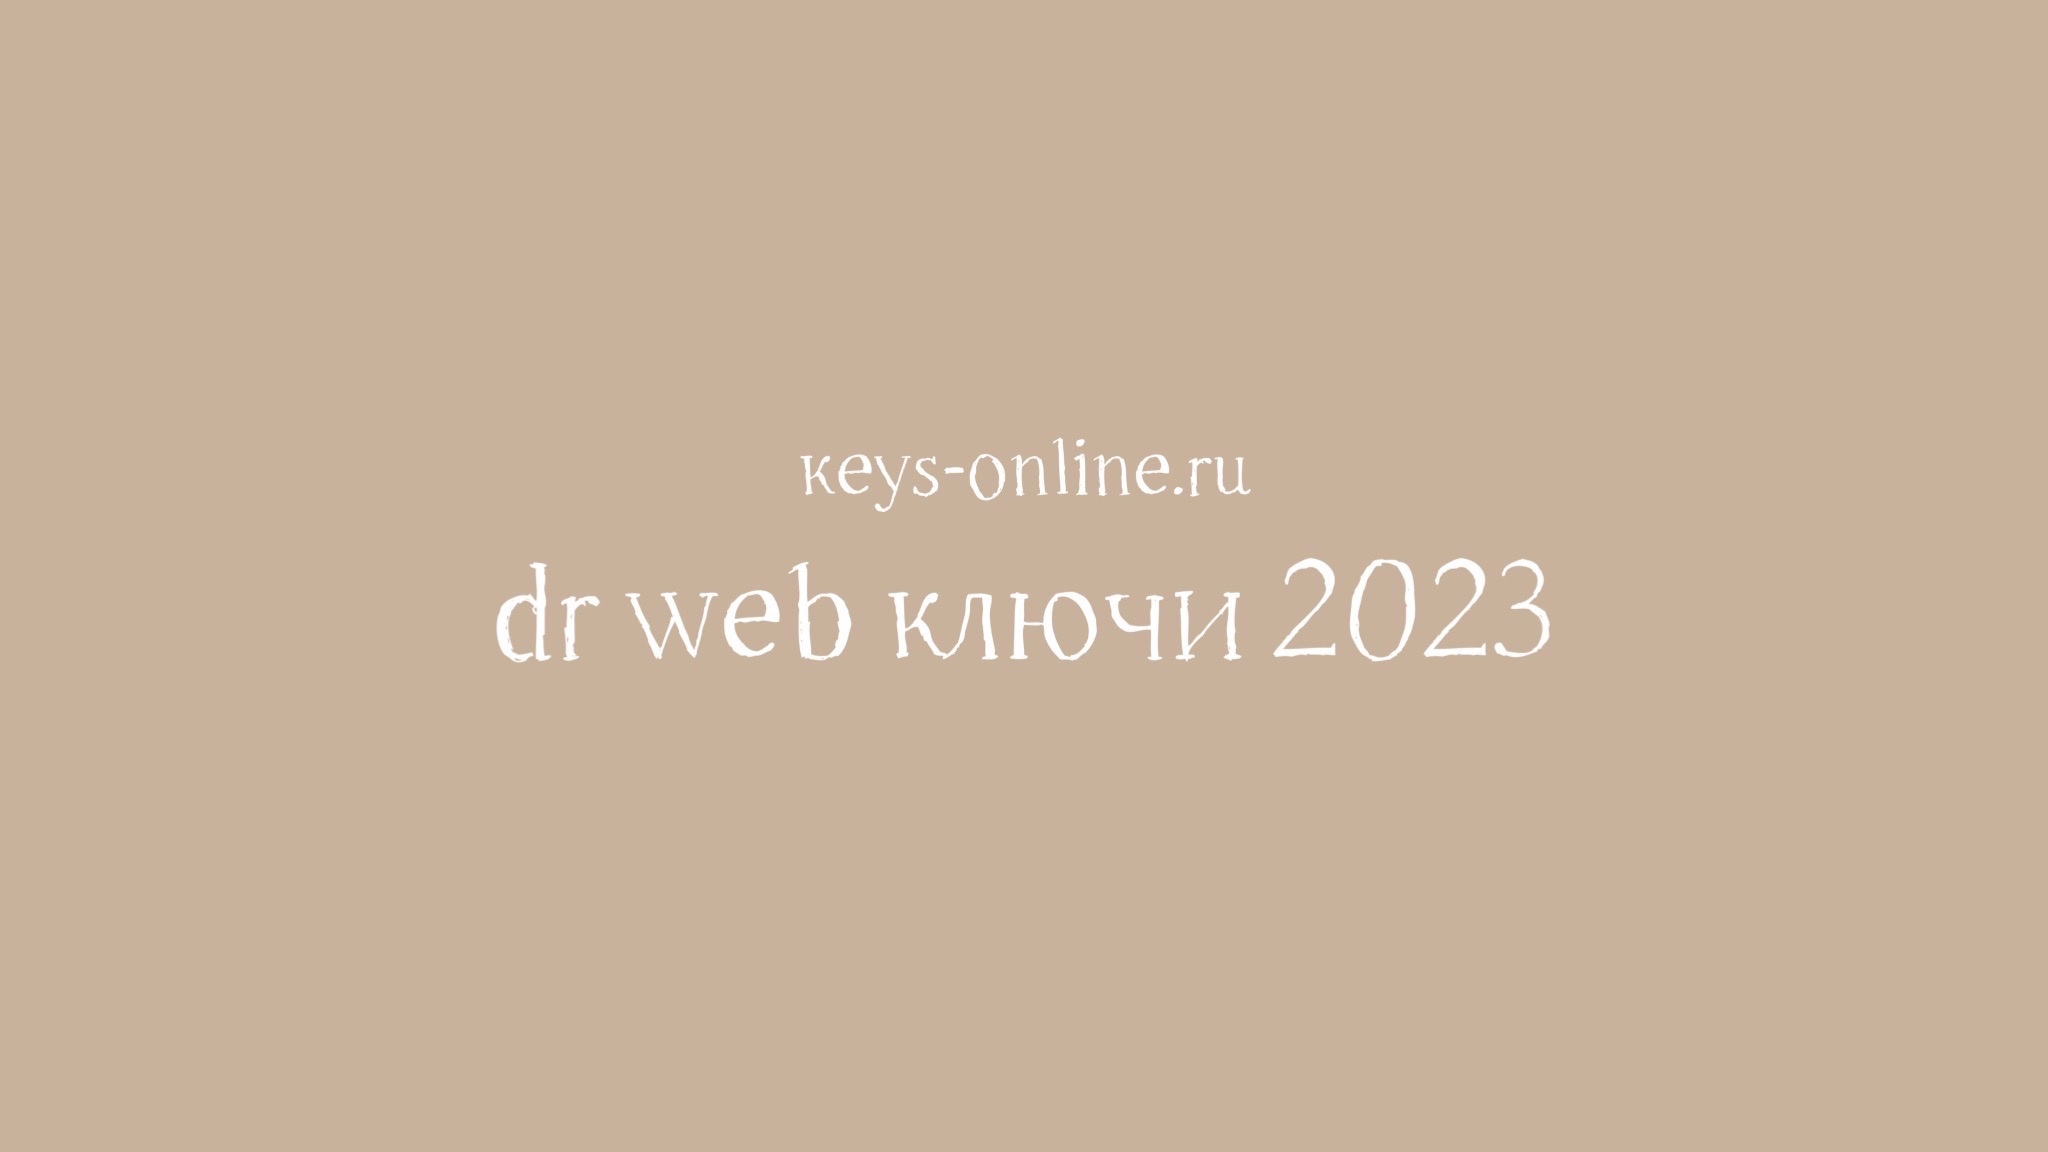 dr web ключи 2023